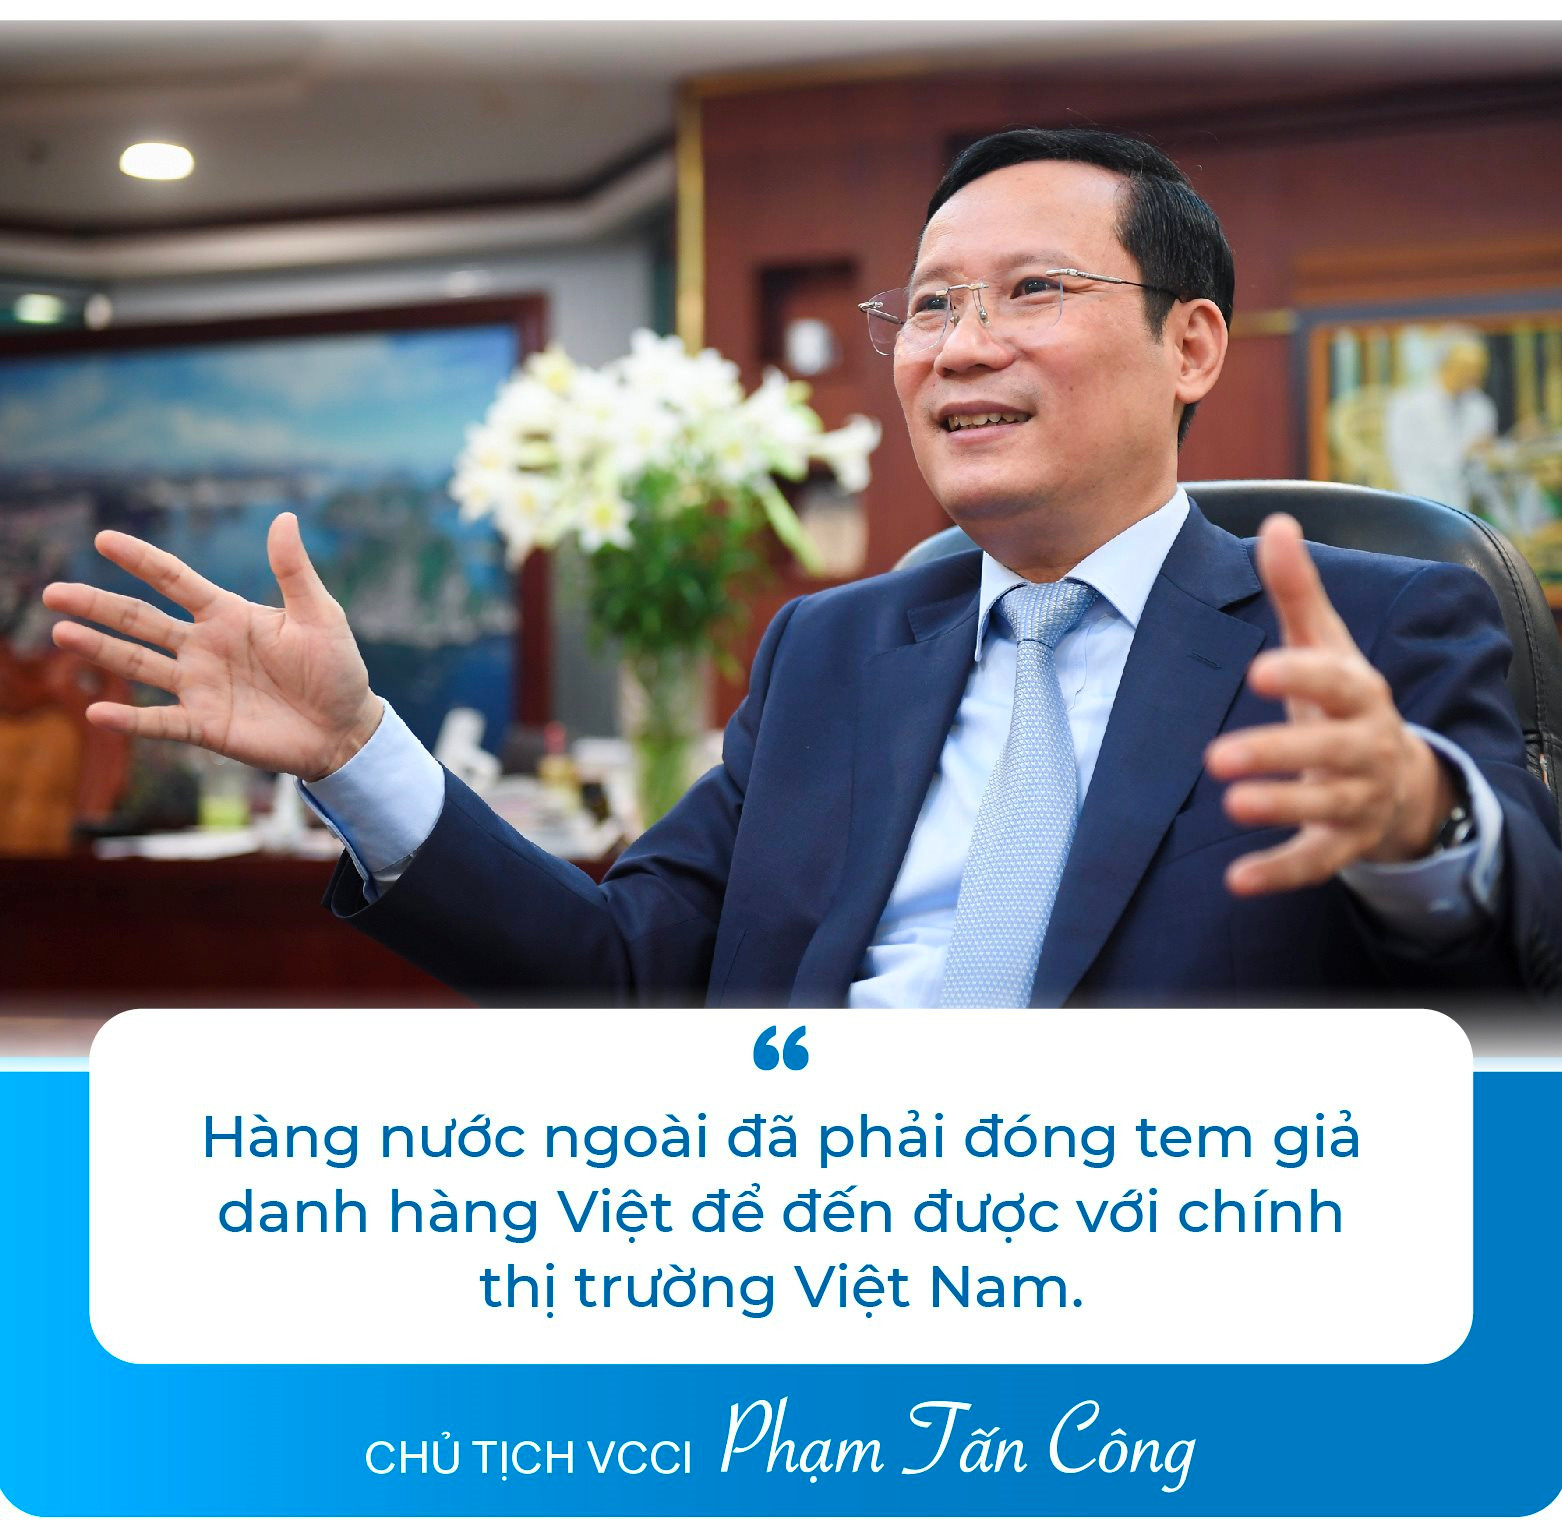 Chủ tịch VCCI Phạm Tấn Công: Không có đạo đức doanh nhân và văn hóa kinh doanh, doanh nghiệp sẽ sụp đổ thôi! - Ảnh 5.